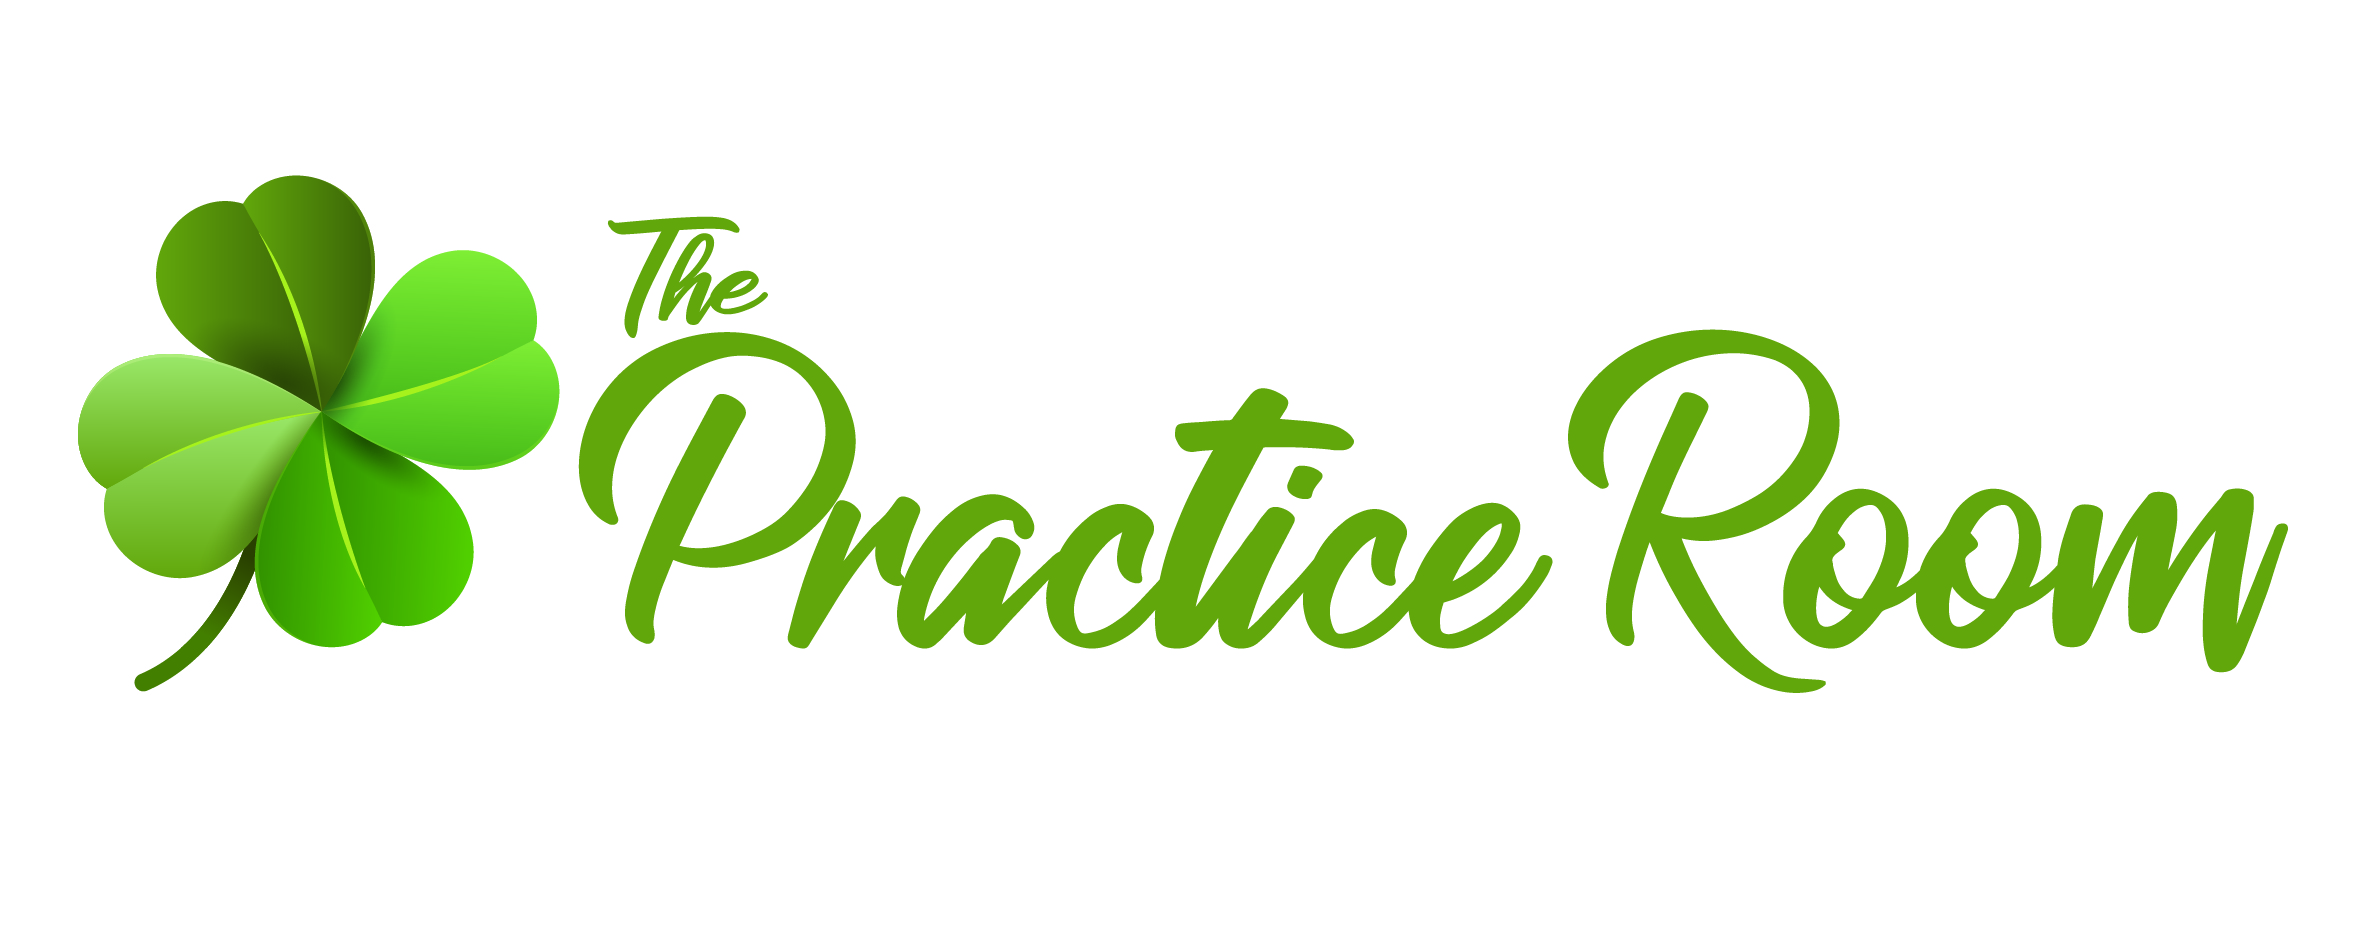 The Practice Room Logo